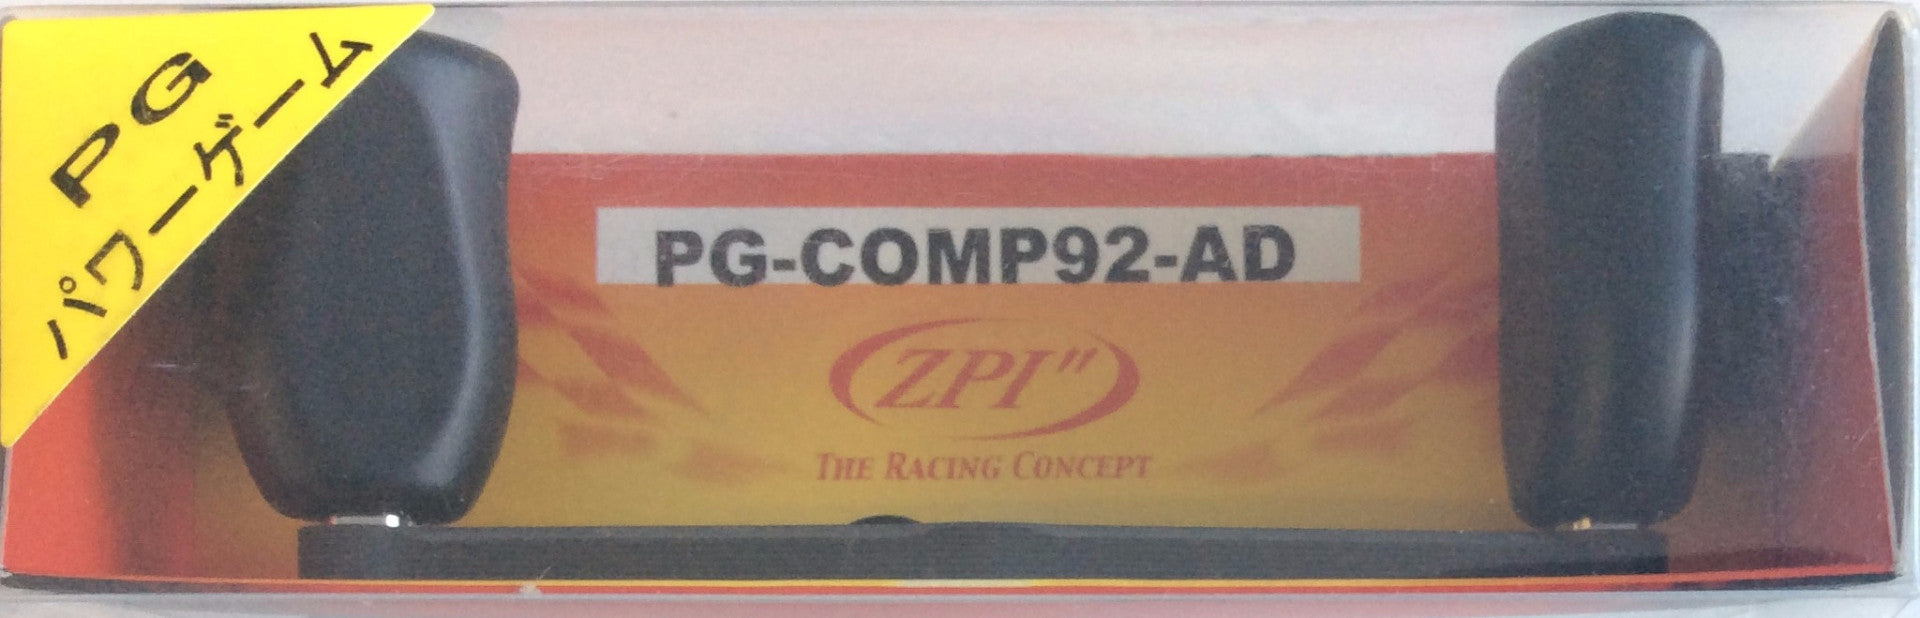 ZPI PG-COMP92-AD SSRC Carbon Handle (4823) - Bait Tackle Store